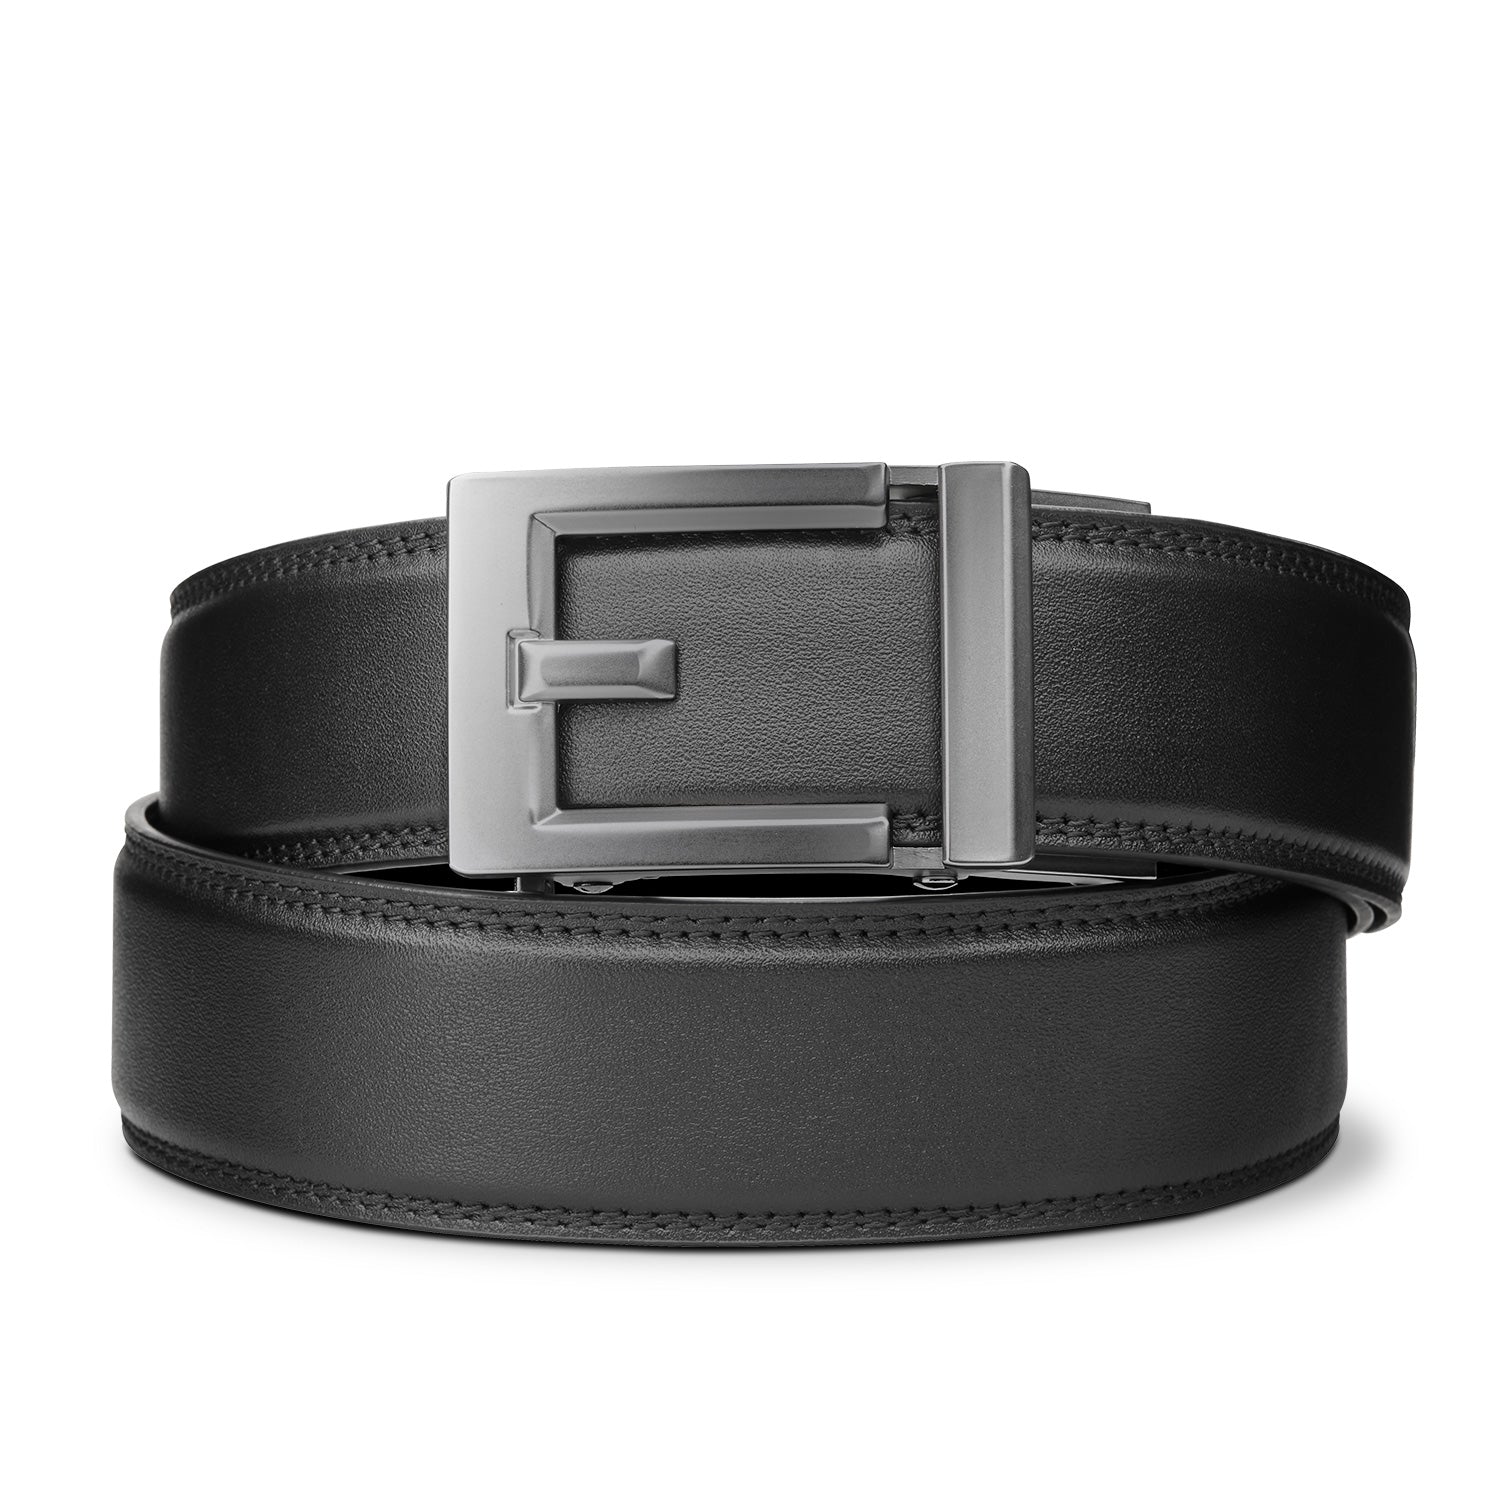 S/S 1996 'CC' Buckle Leather Belt, Authentic & Vintage